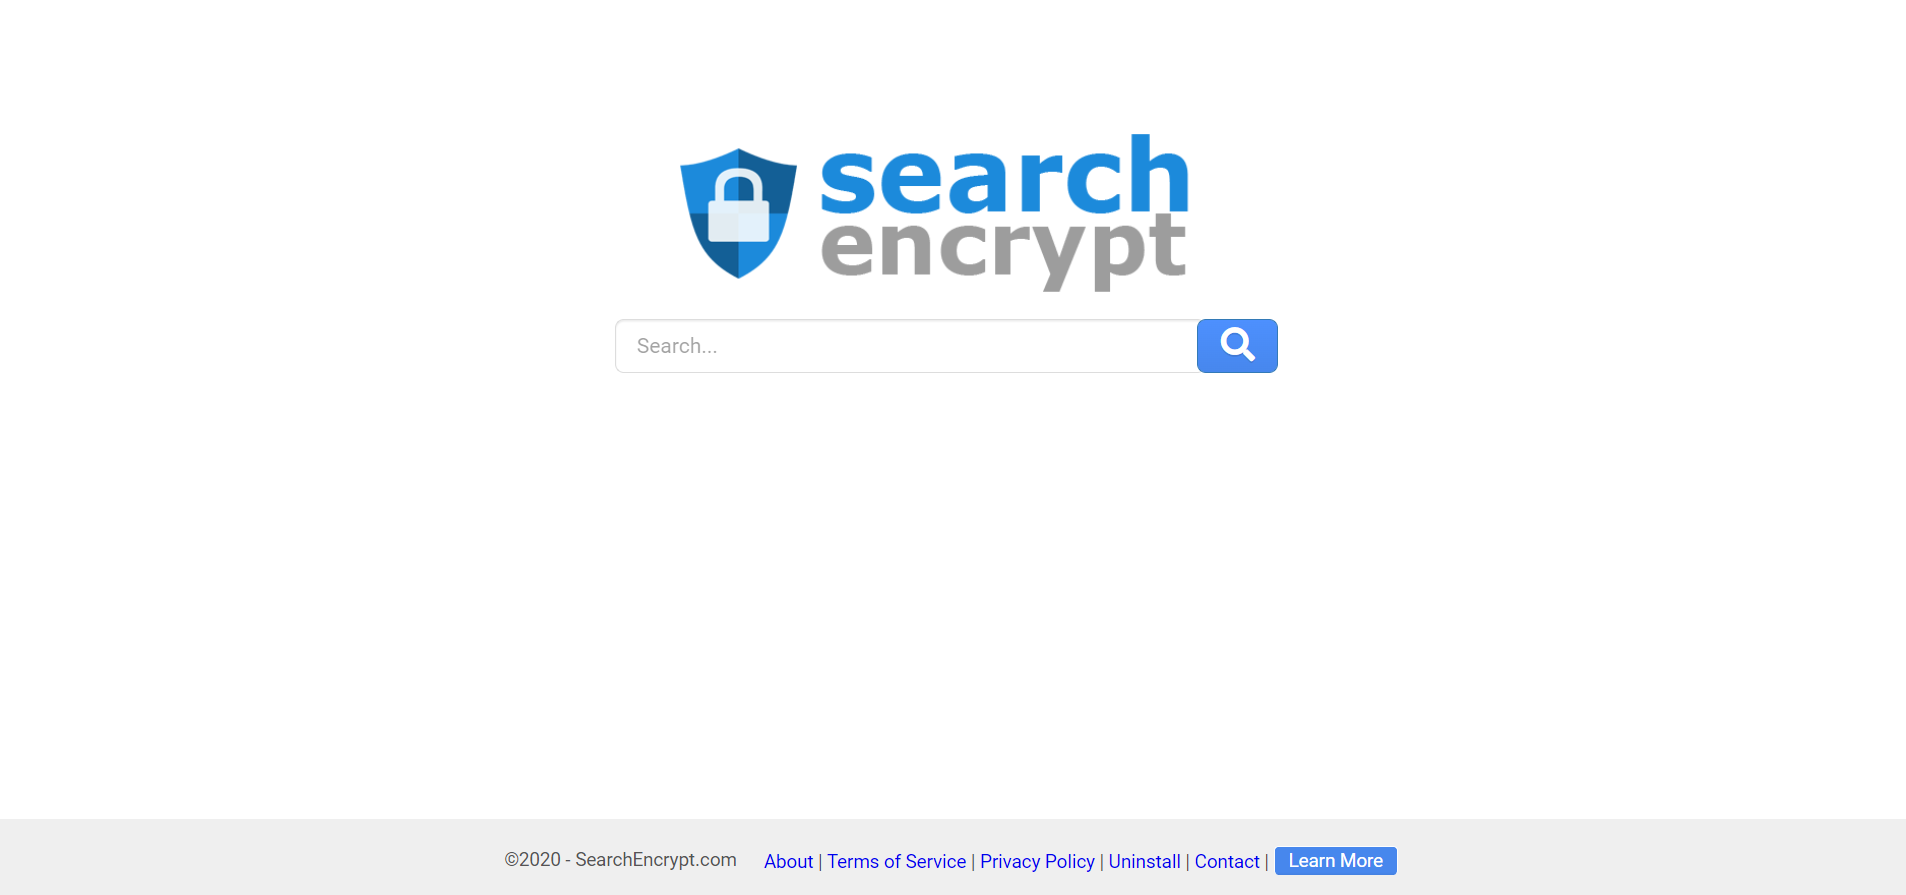 Buscadores aparte de Google: Search Encrypt